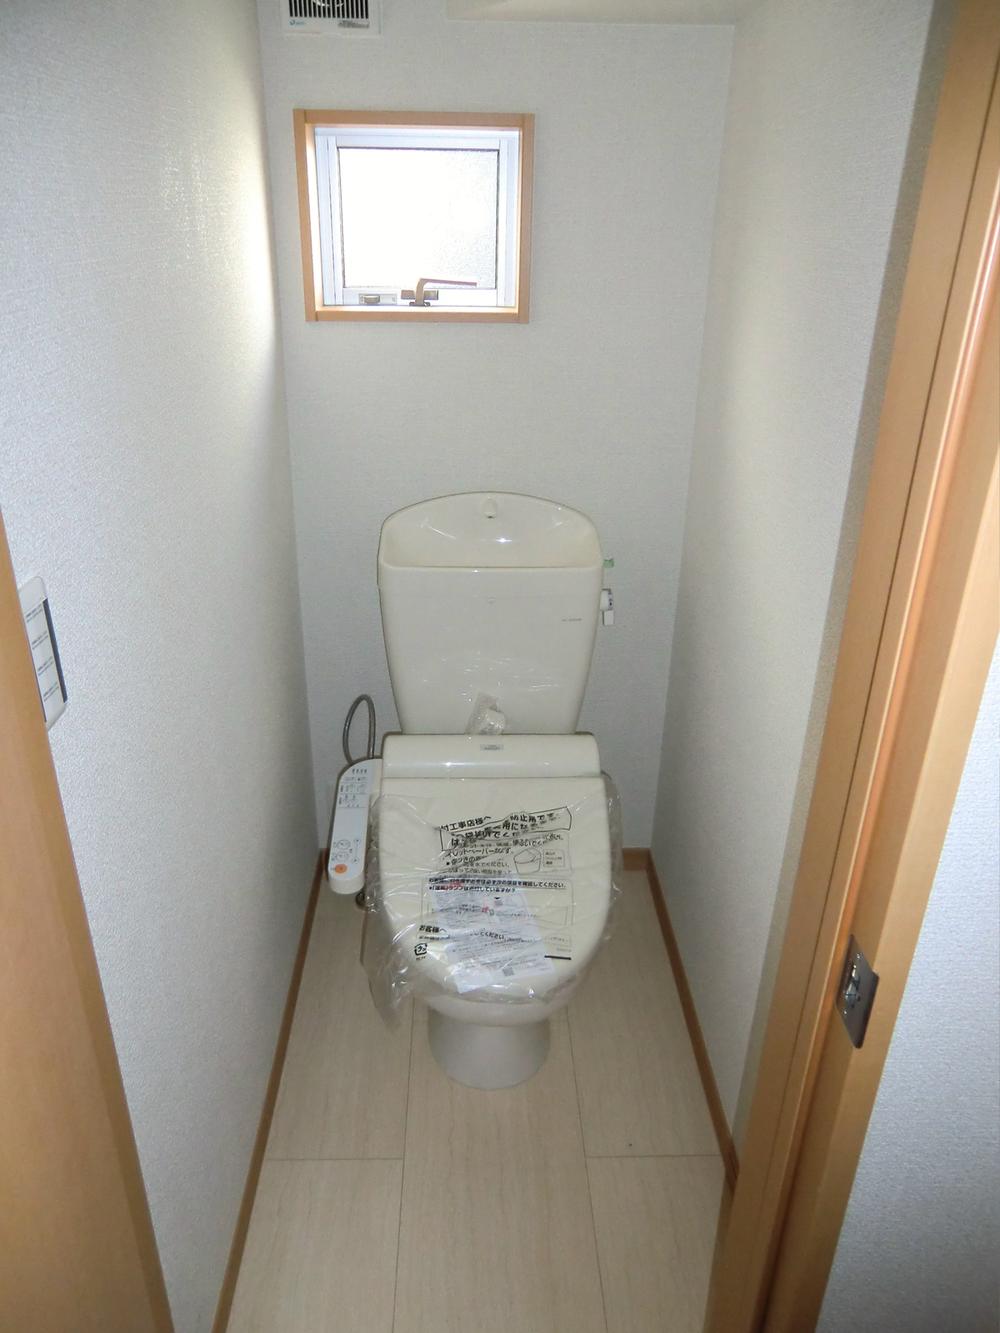 Toilet. ◇ toilet ◇  1st floor ・ Second floor Bidet  